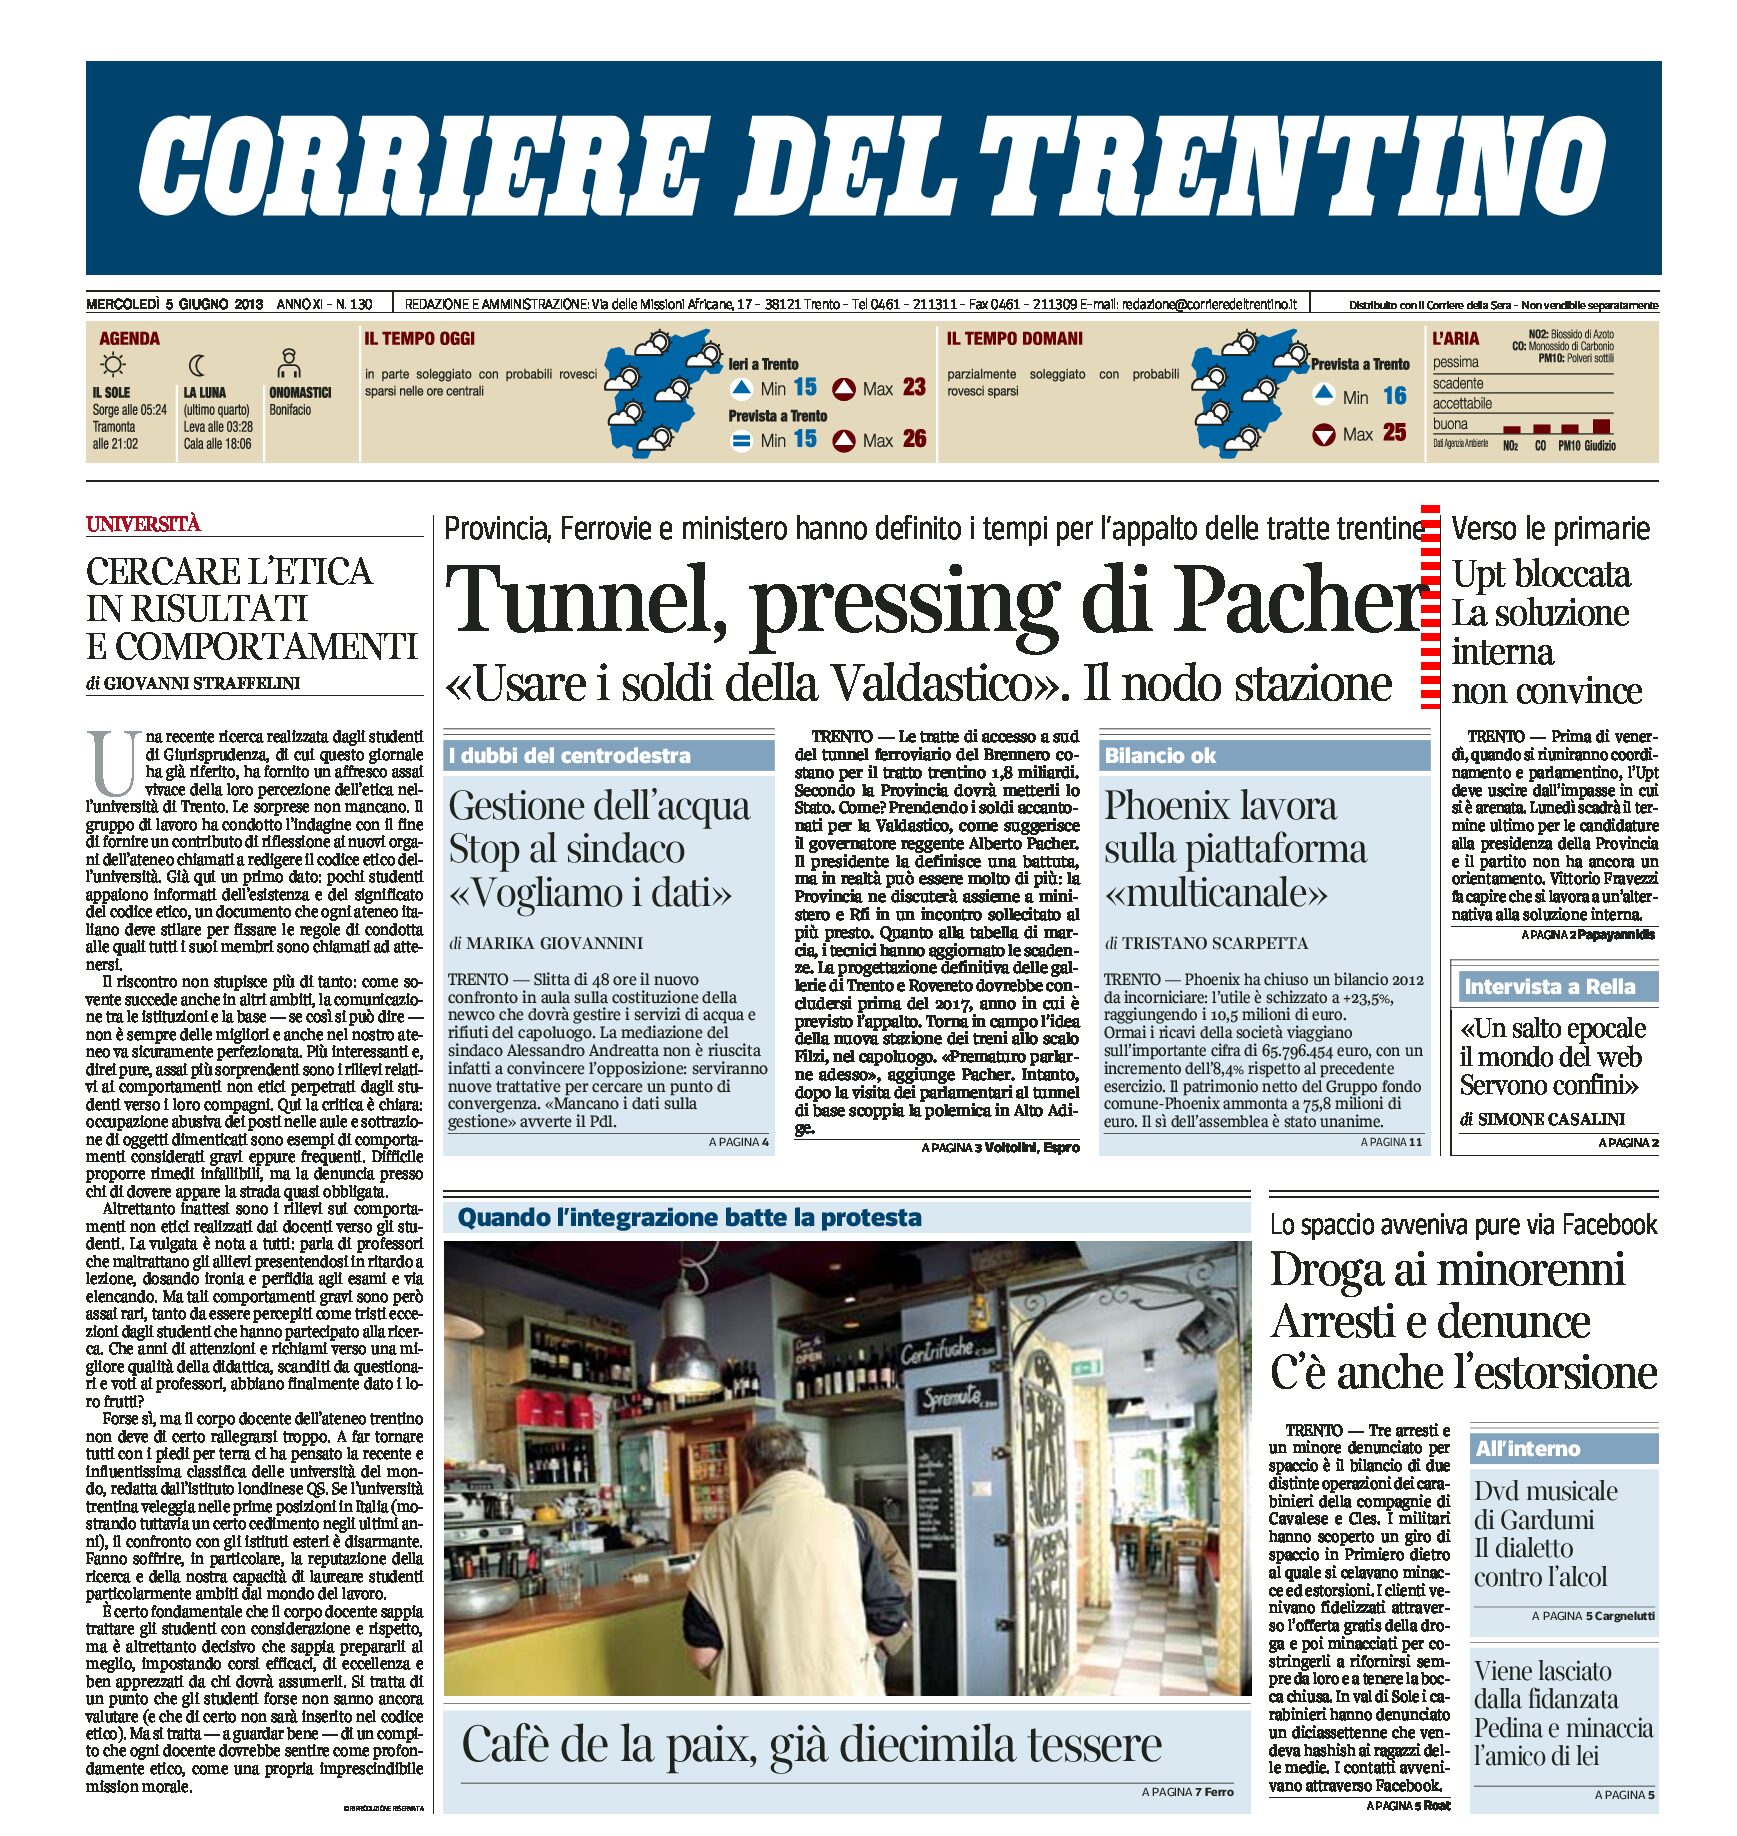 Trento: Tunnel, Valdastico e Nuova stazione